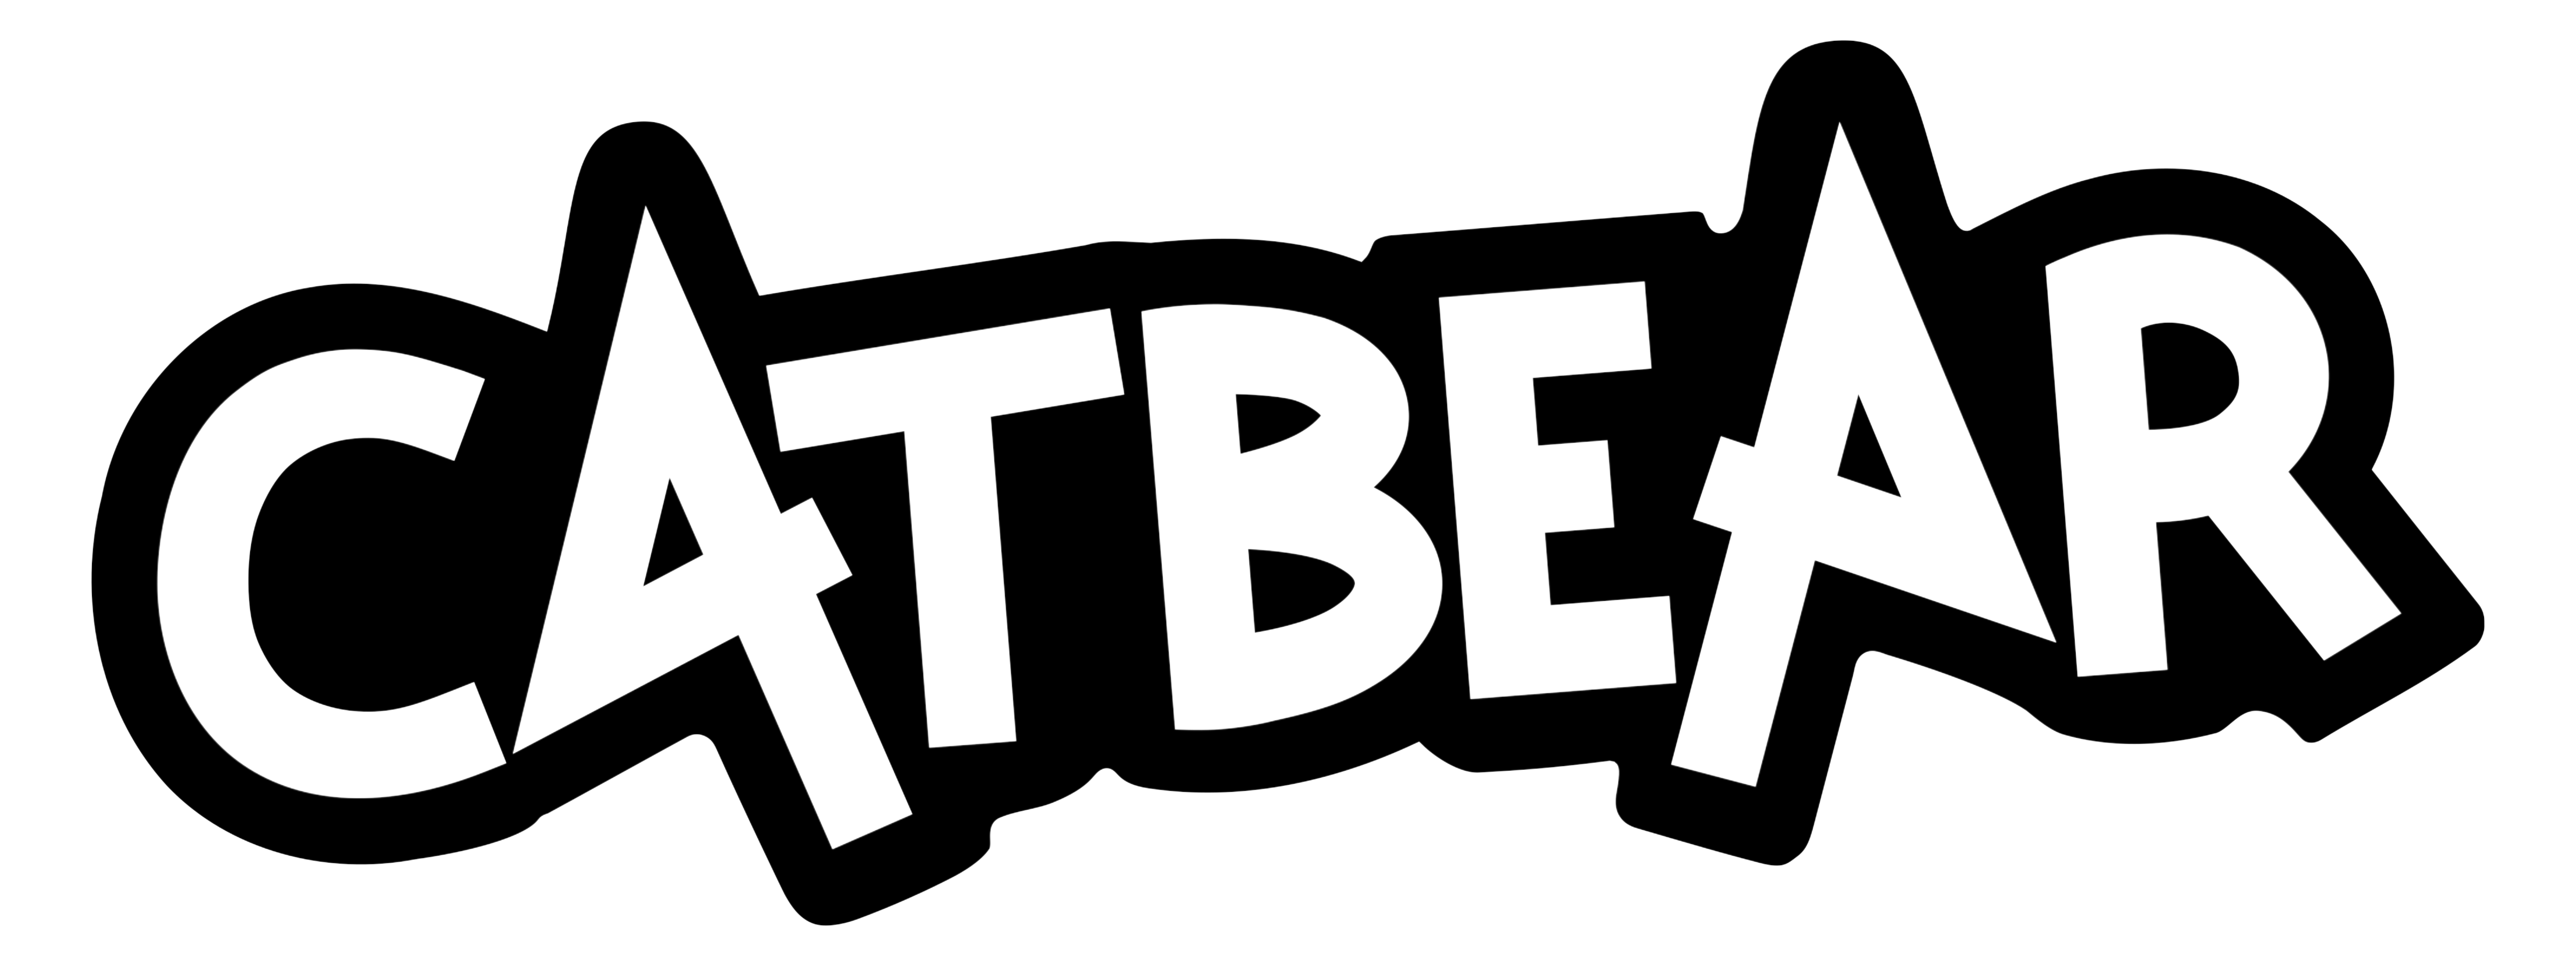 CATBEAR Logo